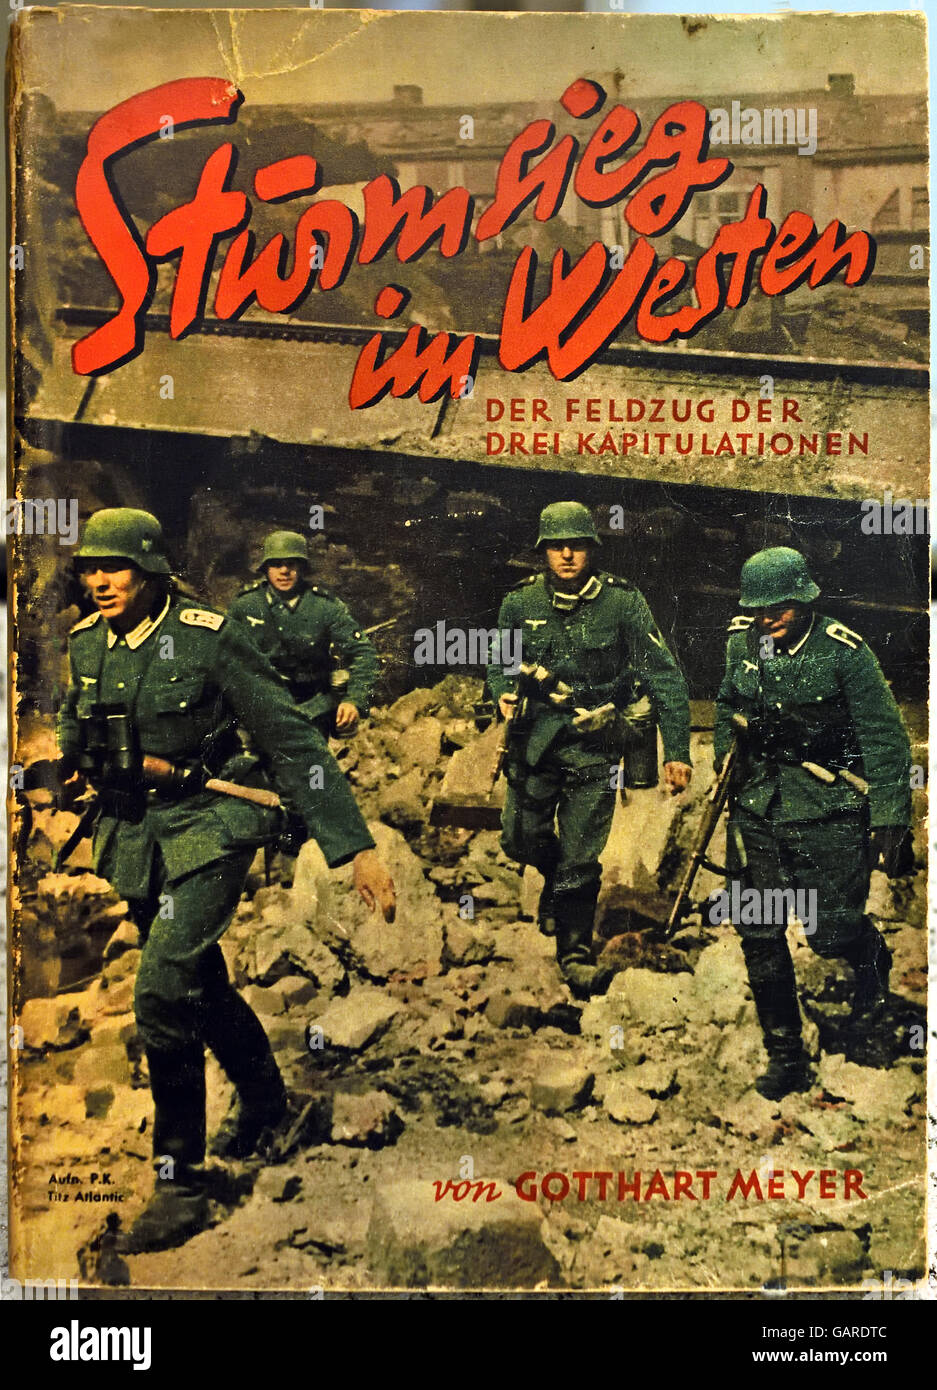 Assault vittoria in occidente. La campagna delle tre capitolazione ( Scherl Verlag Berlin !940 ) Berlino Germania nazista Foto Stock